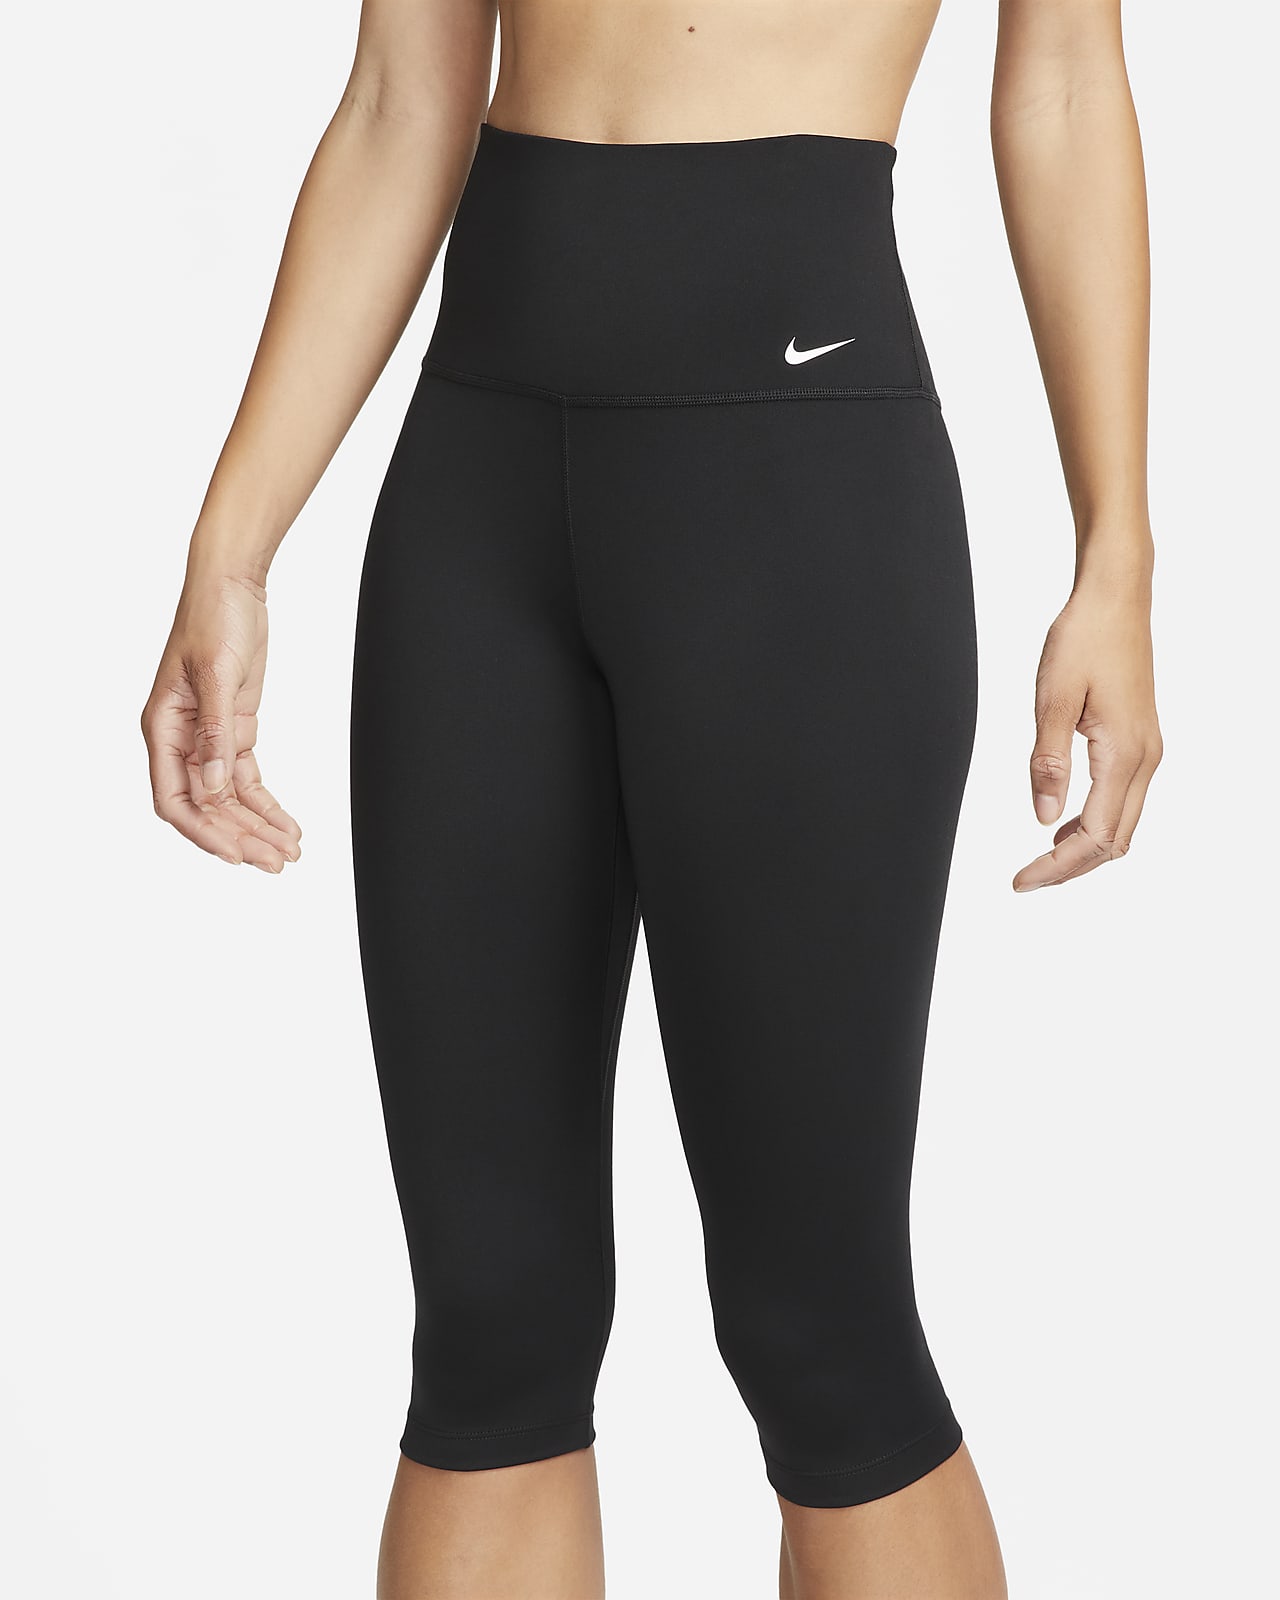 Nike One Women's High-Waisted Capri Leggings. Nike CA